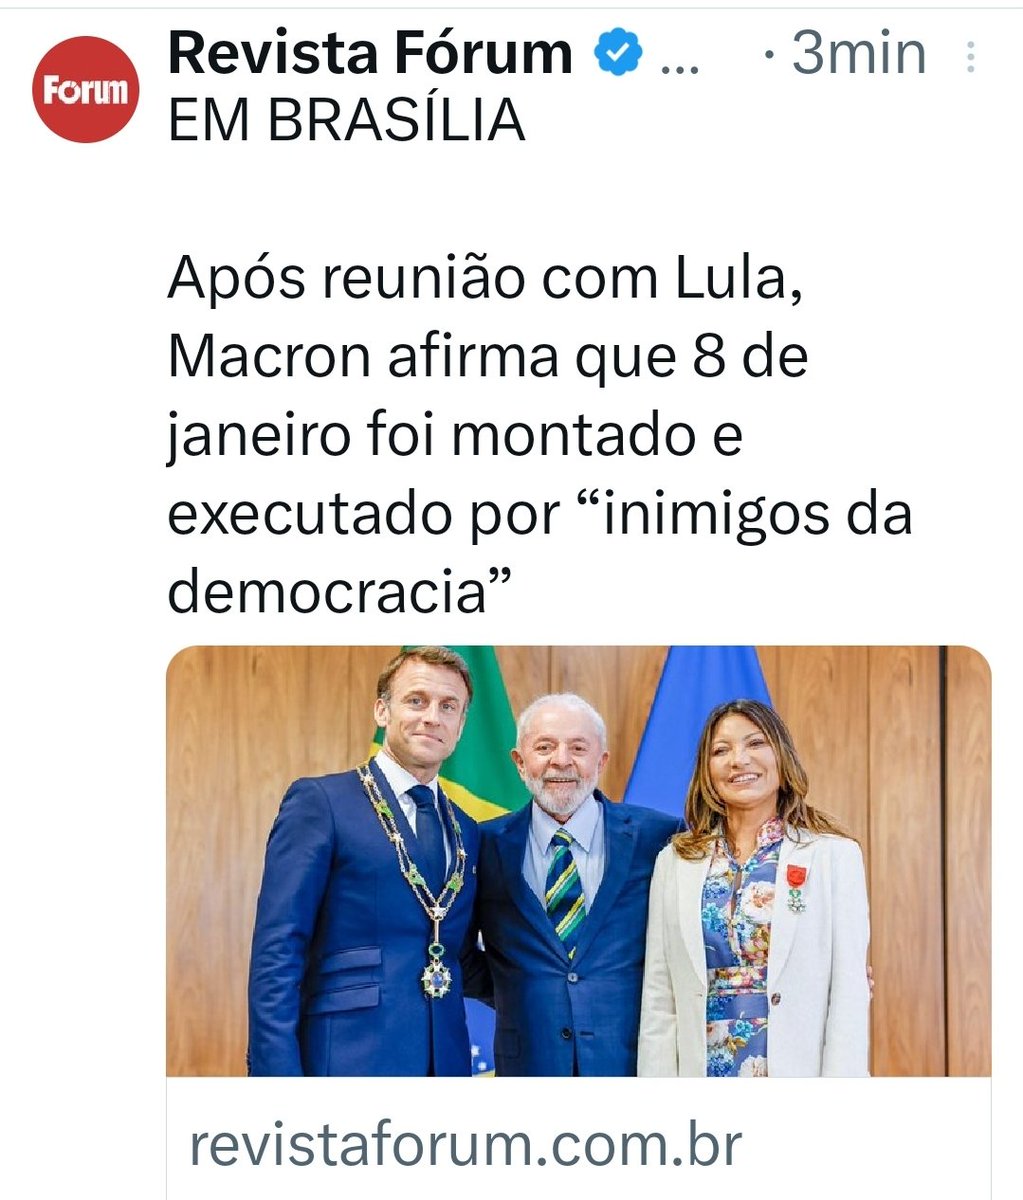 Não temos nenhuma dúvida a esse respeito!🚩🚩 Quiseram privar o povo de ter de volta a Democracia. Pensaram em se perpetuar no poder. Esqueceram que existia um Lula no meio do caminho. No meio do caminho, havia um Lula! #LulaTrabalha